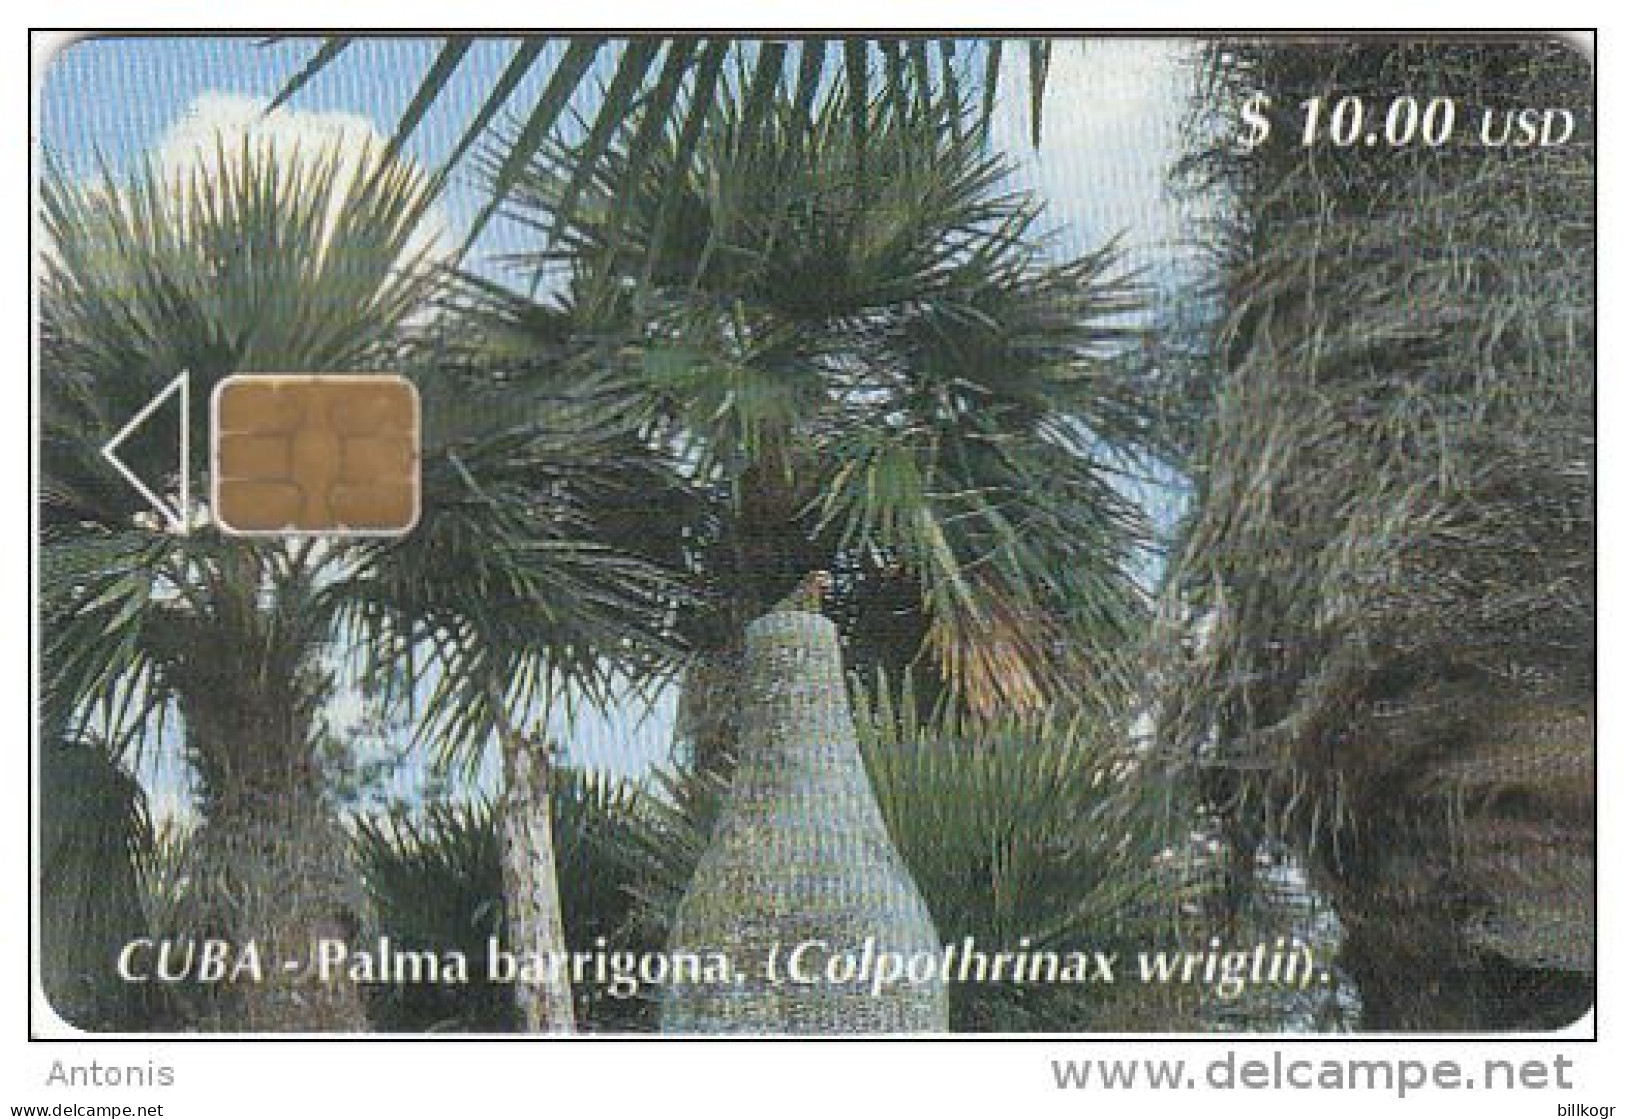 CUBA - Palma Barrigona, Tirage 30000, 06/01, Used - Kuba